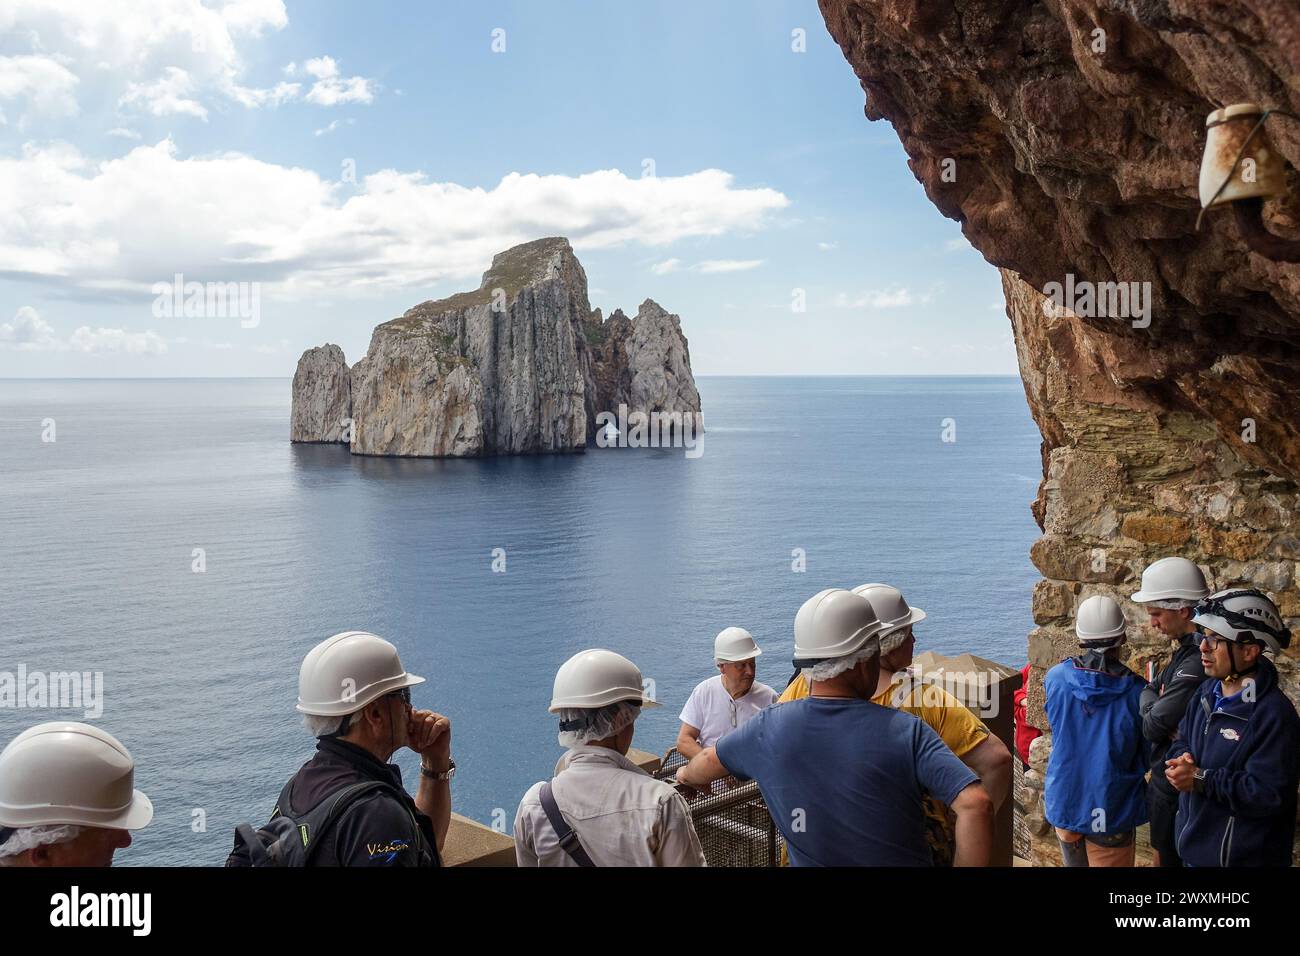 Gruppe von Touristen mit Helmen, die auf eine ferne Felsformation (Sugarloaf Island) im Meer von Porto Flavia, einer Bergbauanlage auf Sardinien, blicken Stockfoto